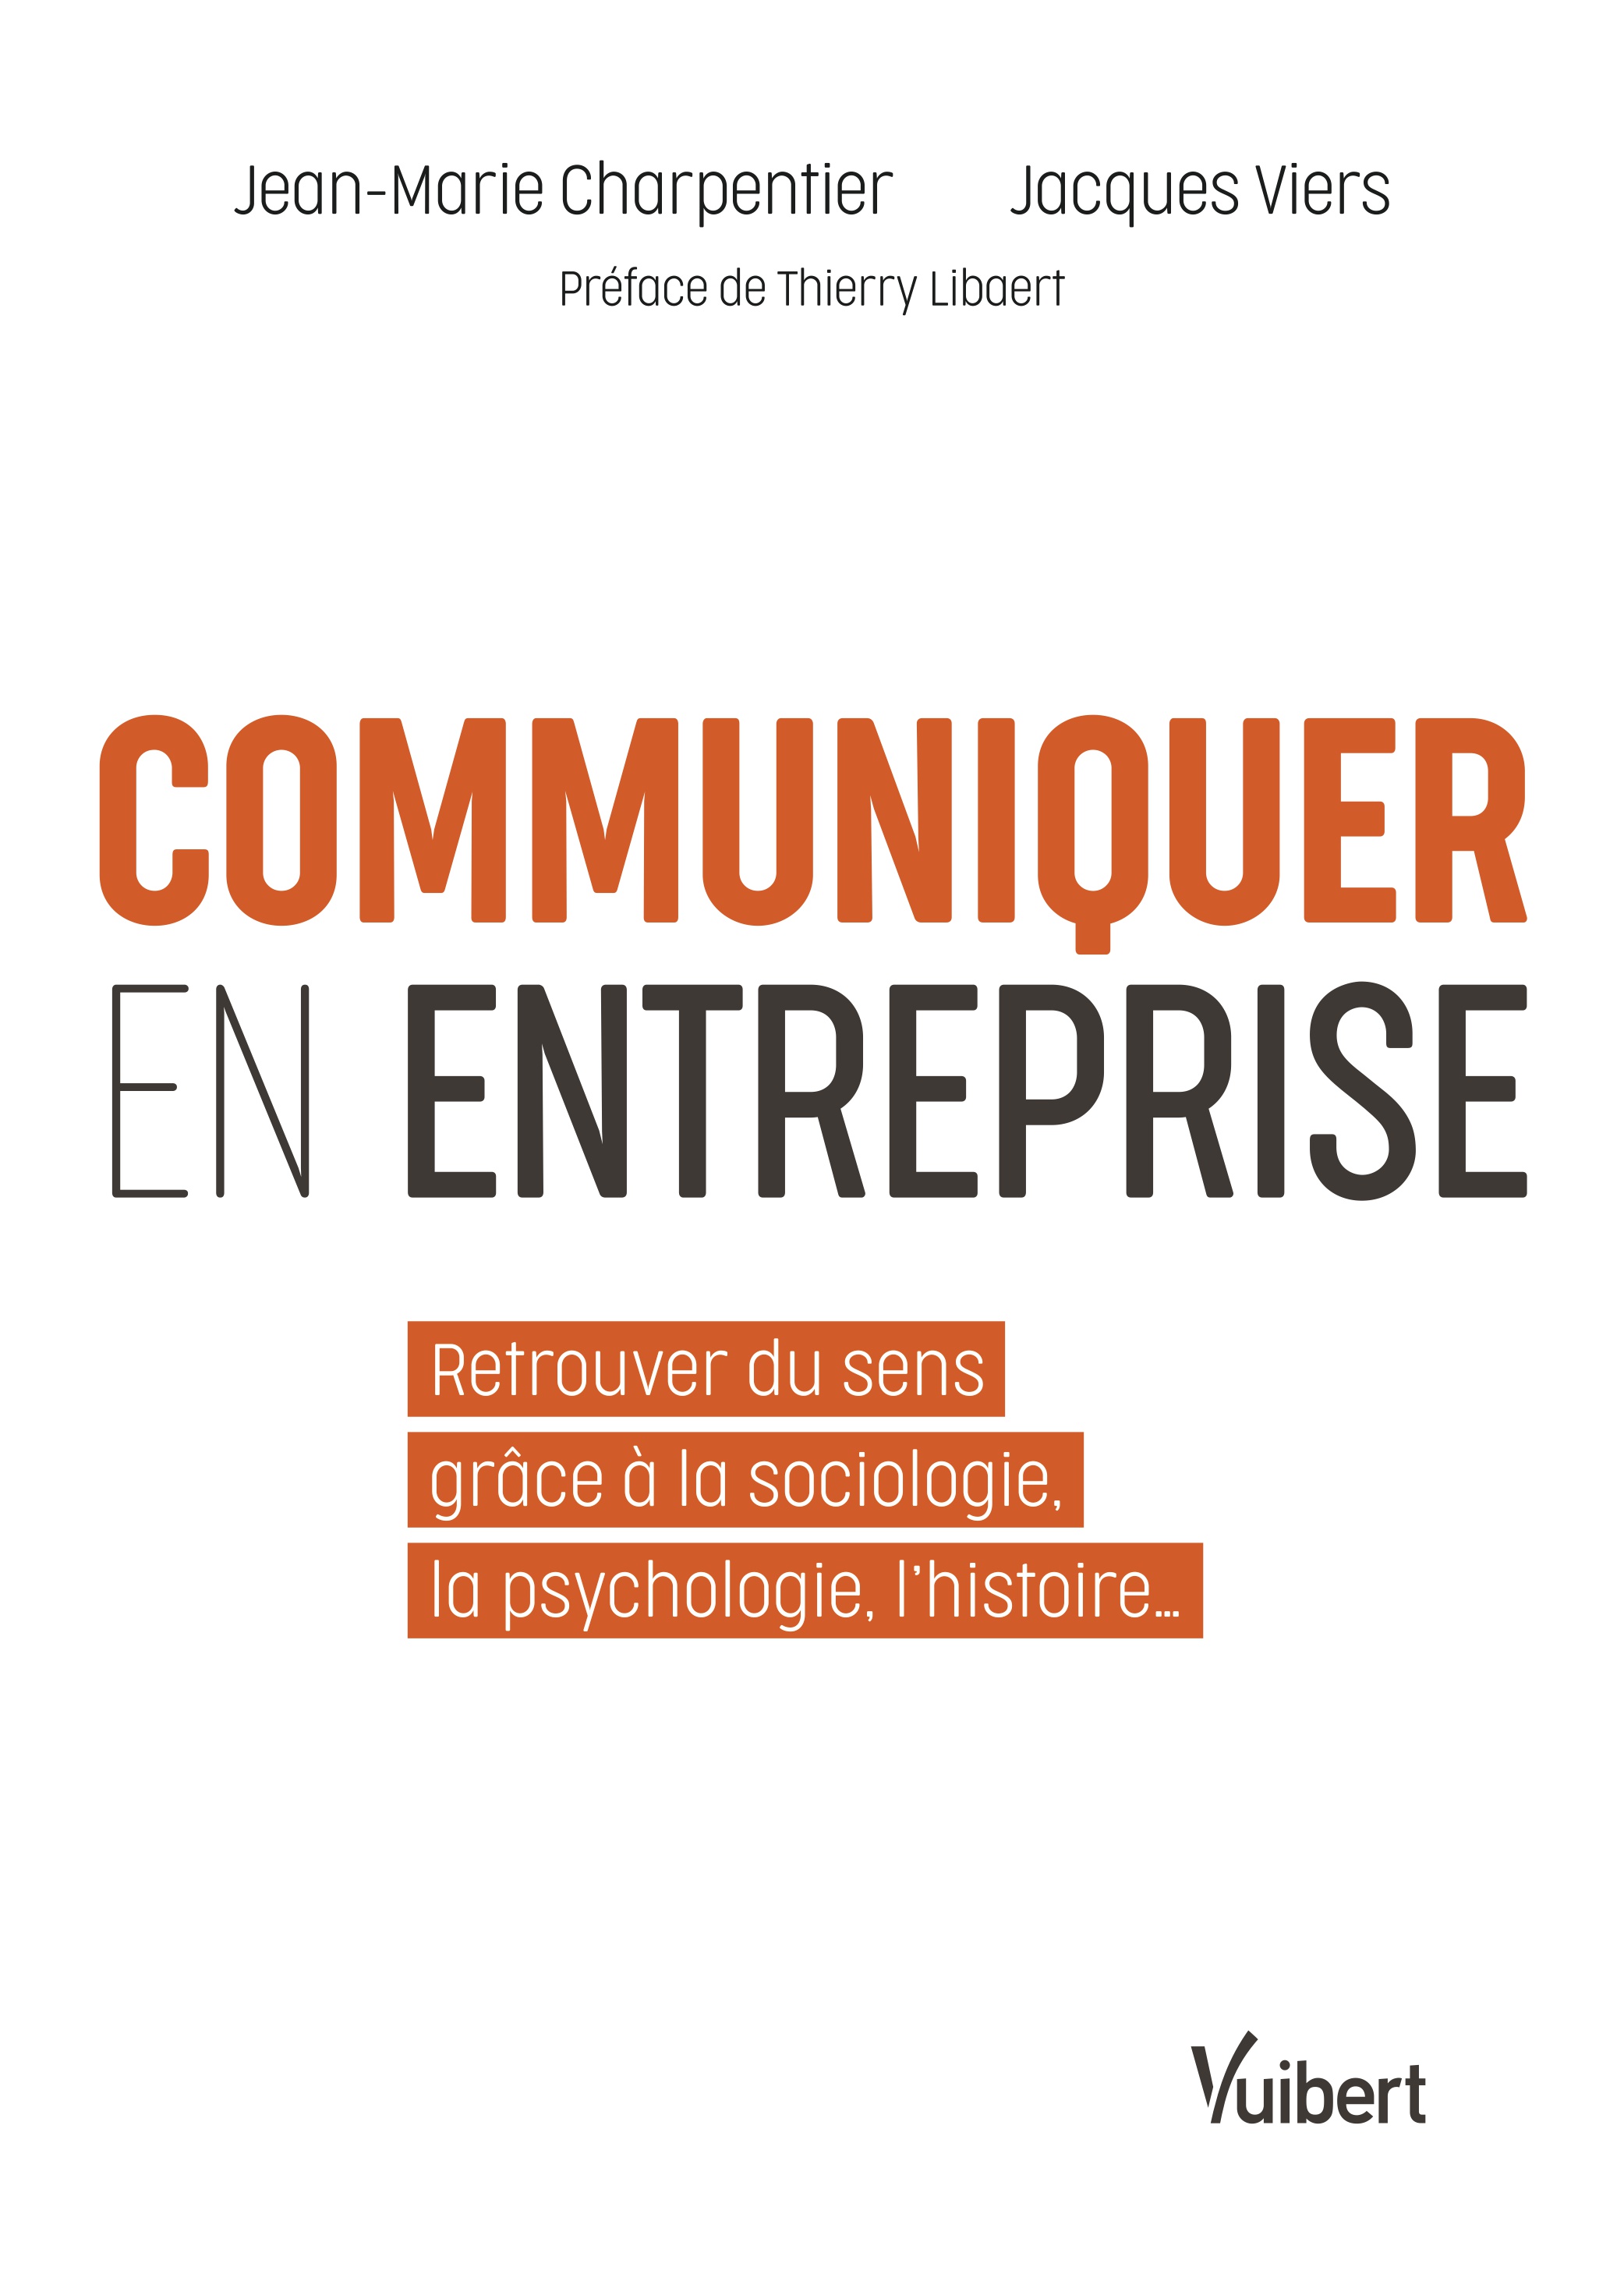 Jean-Marie Charpentier, Jacques Viers, Communiquer en entreprise. Retrouver du sens grâce à la sociologie, la psychologie, l’histoire...